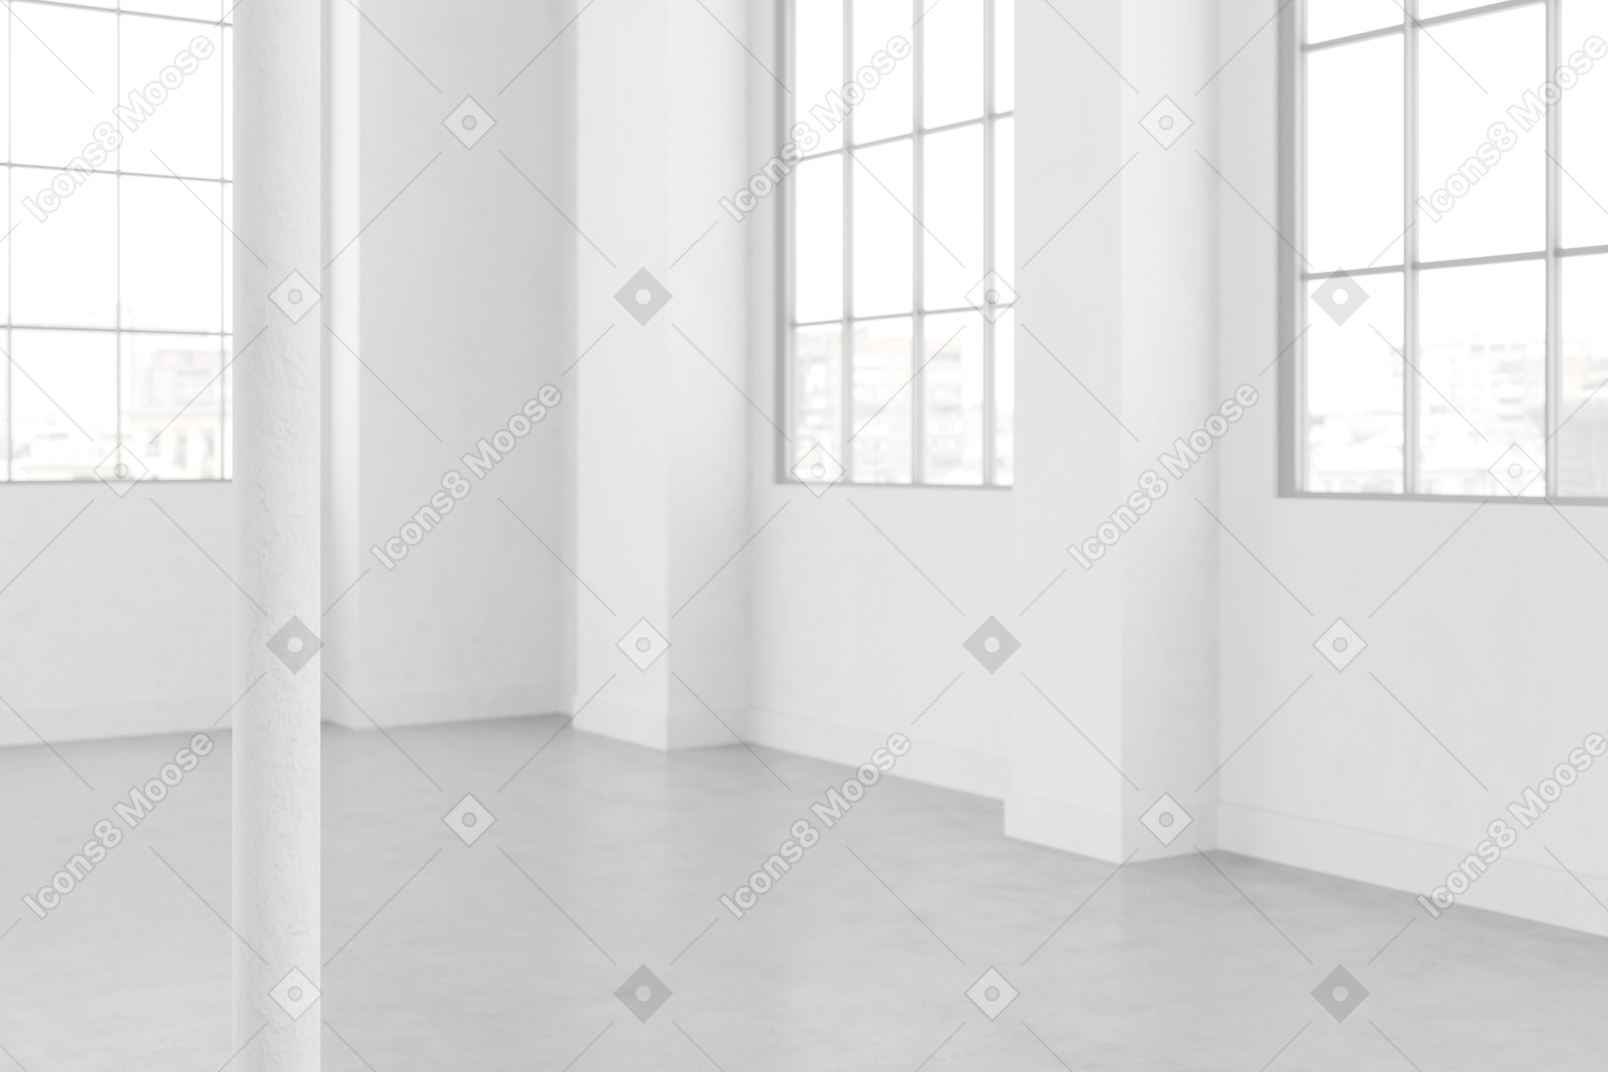 Комната с большими застекленными окнами и белыми стенами